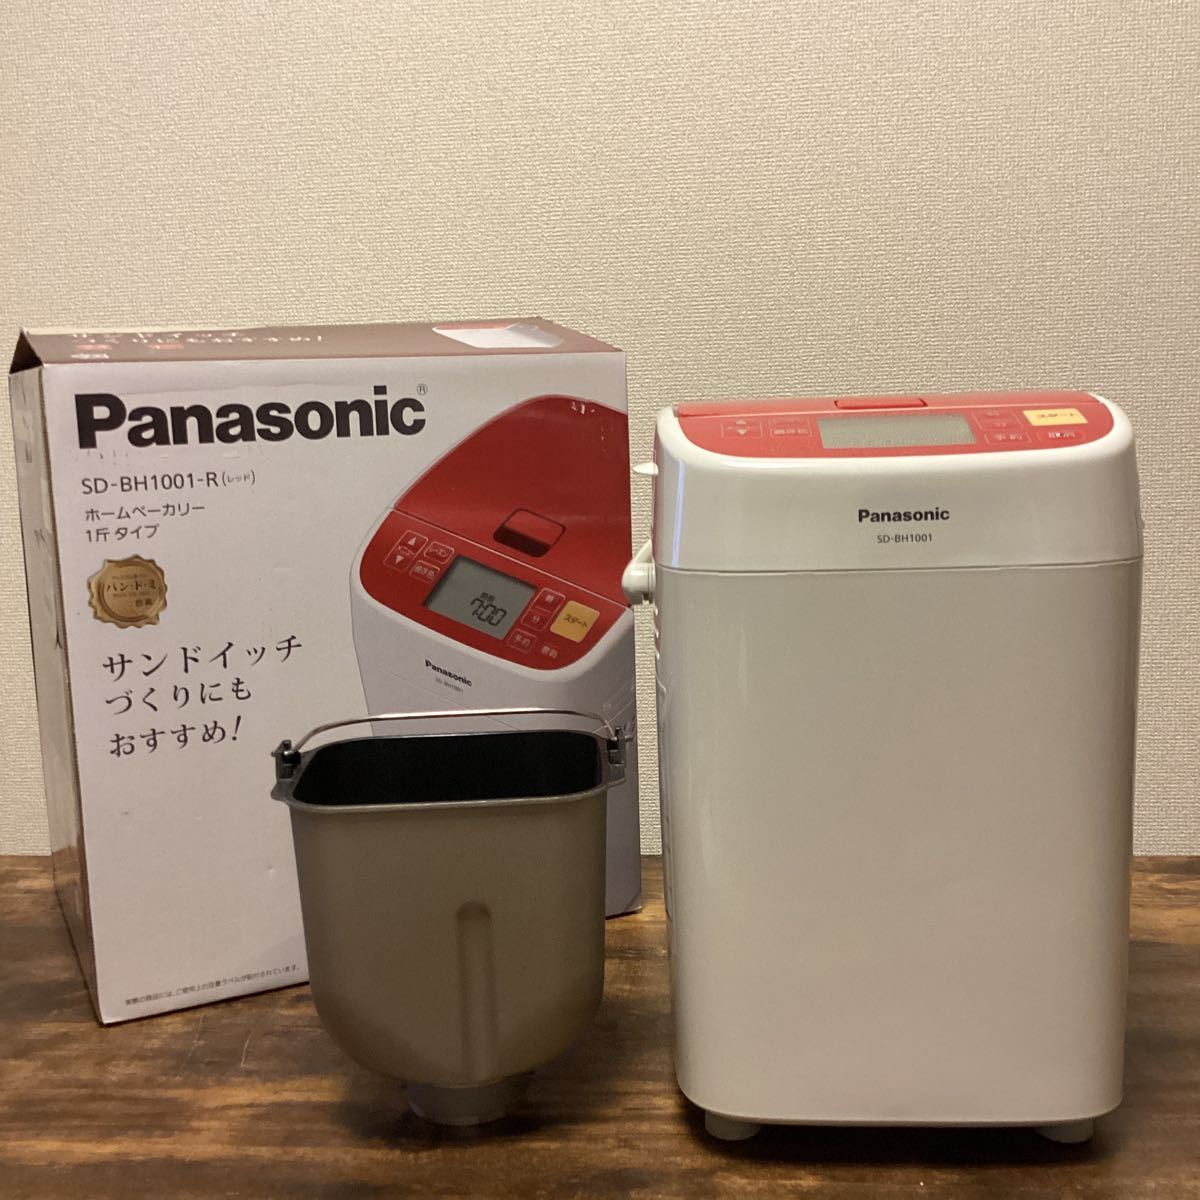 ホームベーカリー Panasonic SD-BH1001 1斤タイプ - 調理器具